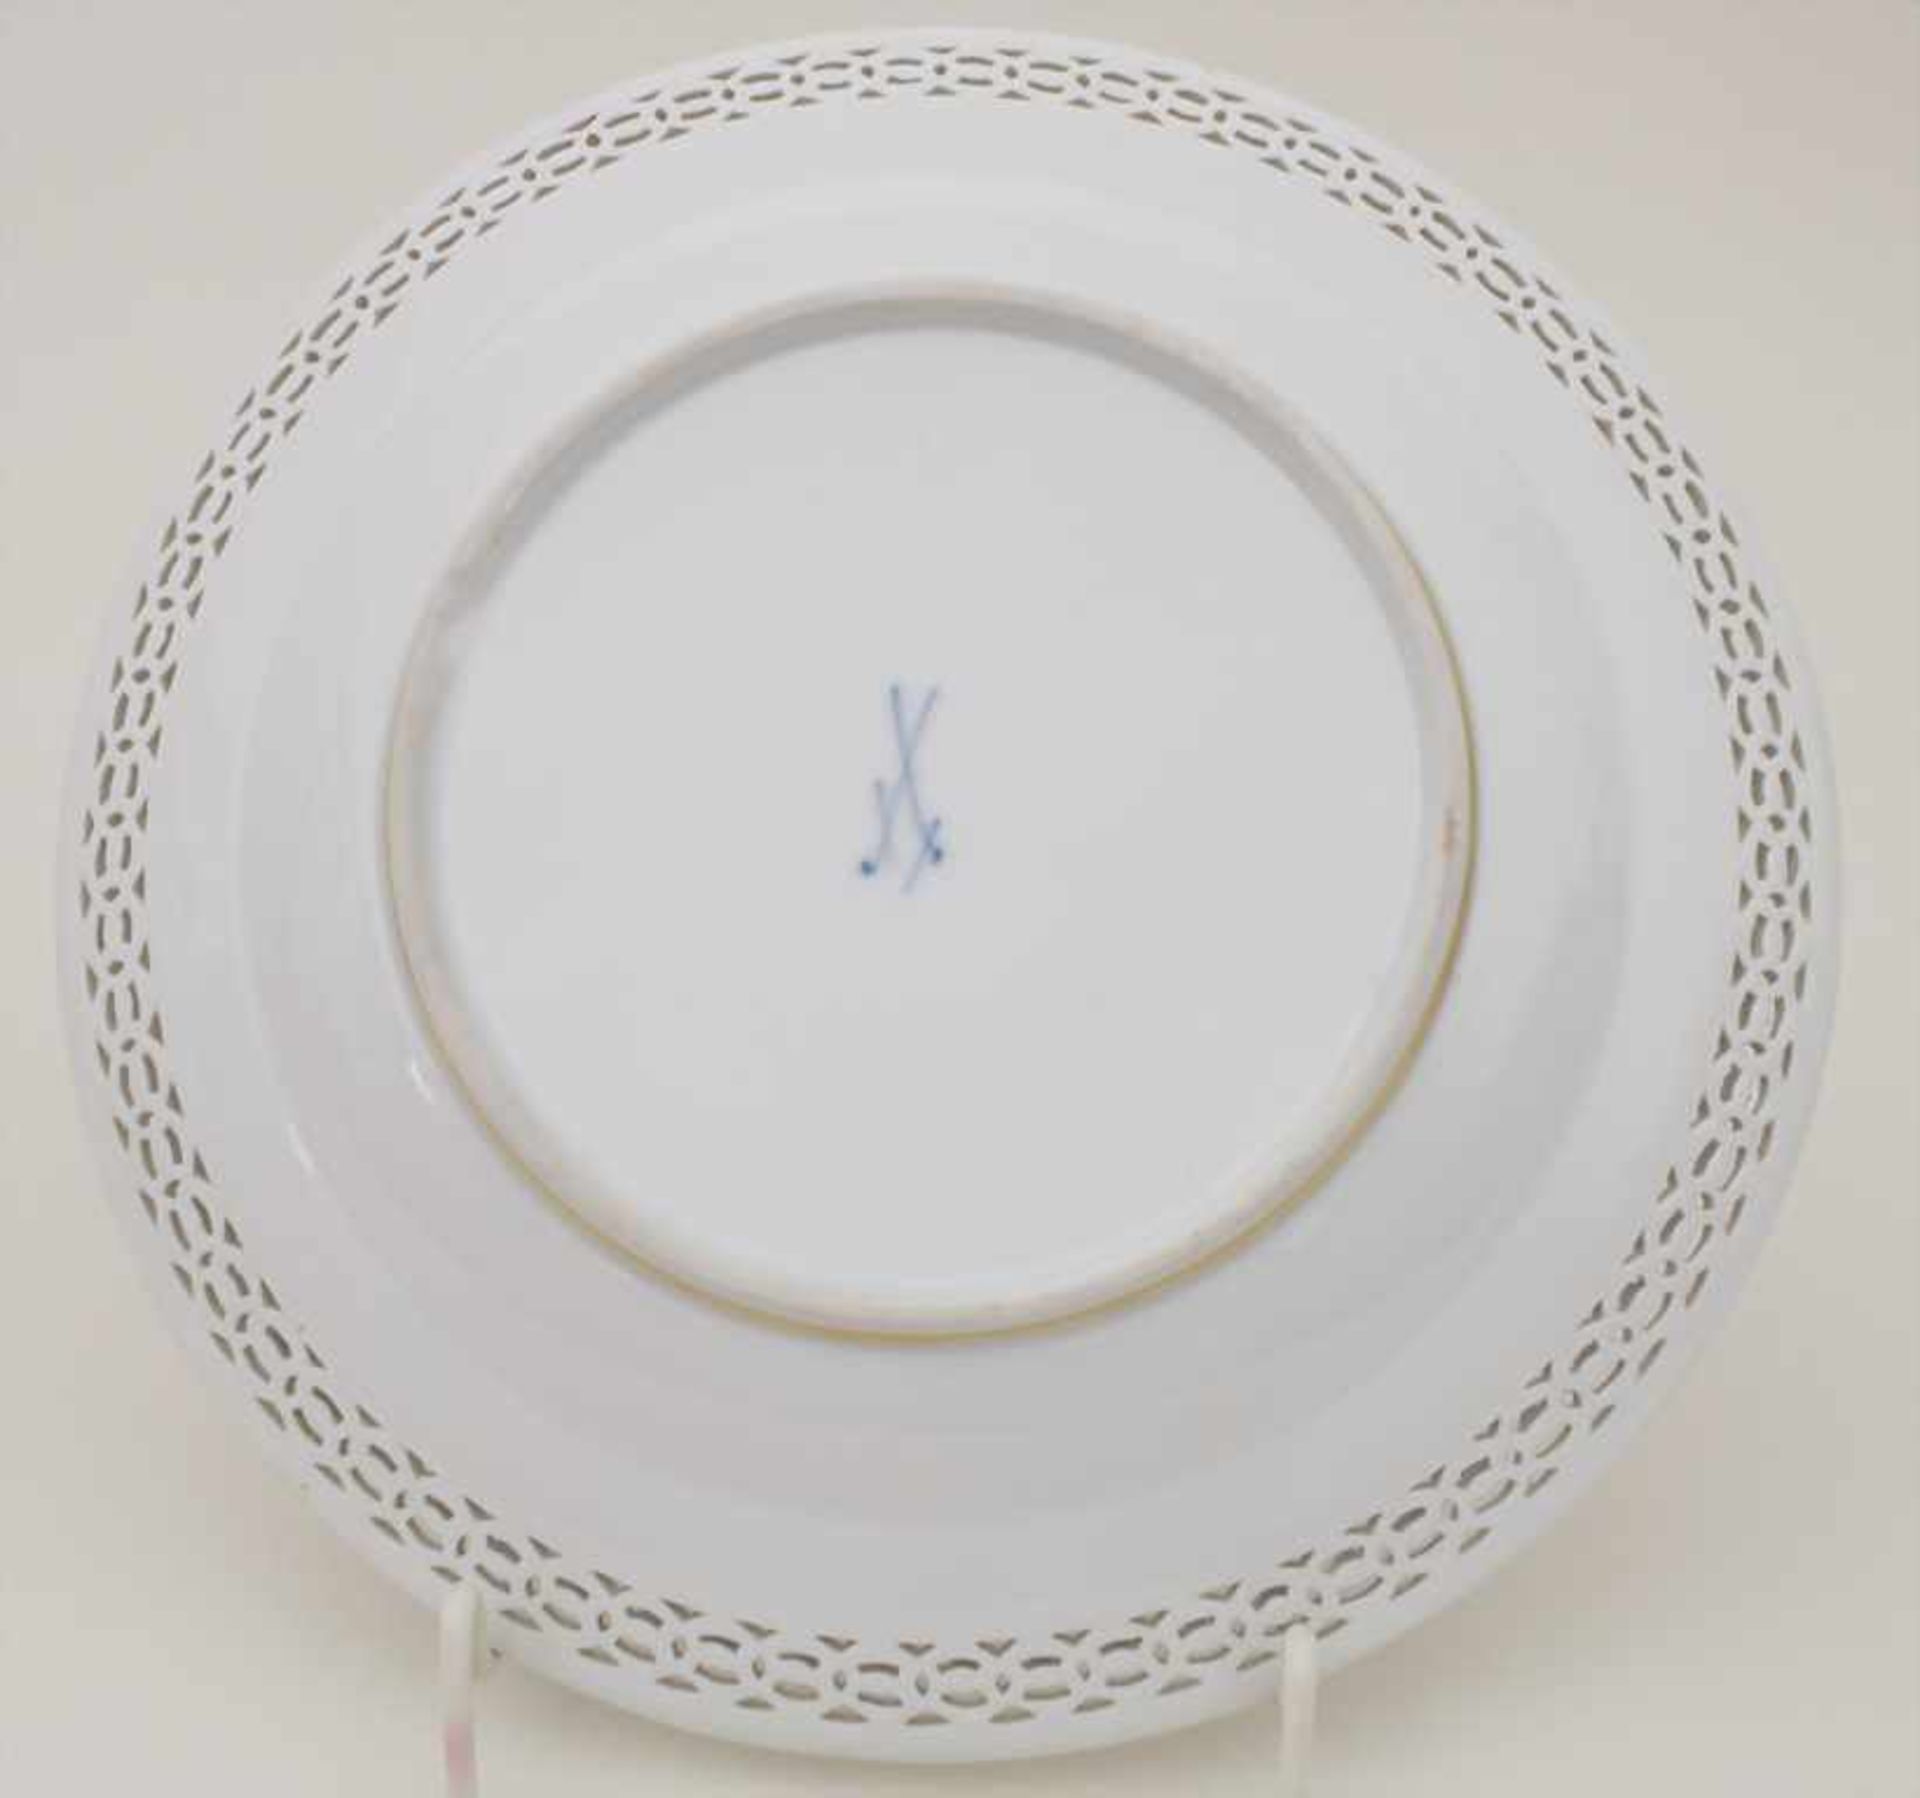 3 Korb-Teller / 3 plates, Meissen, 19. Jh. - Image 10 of 11